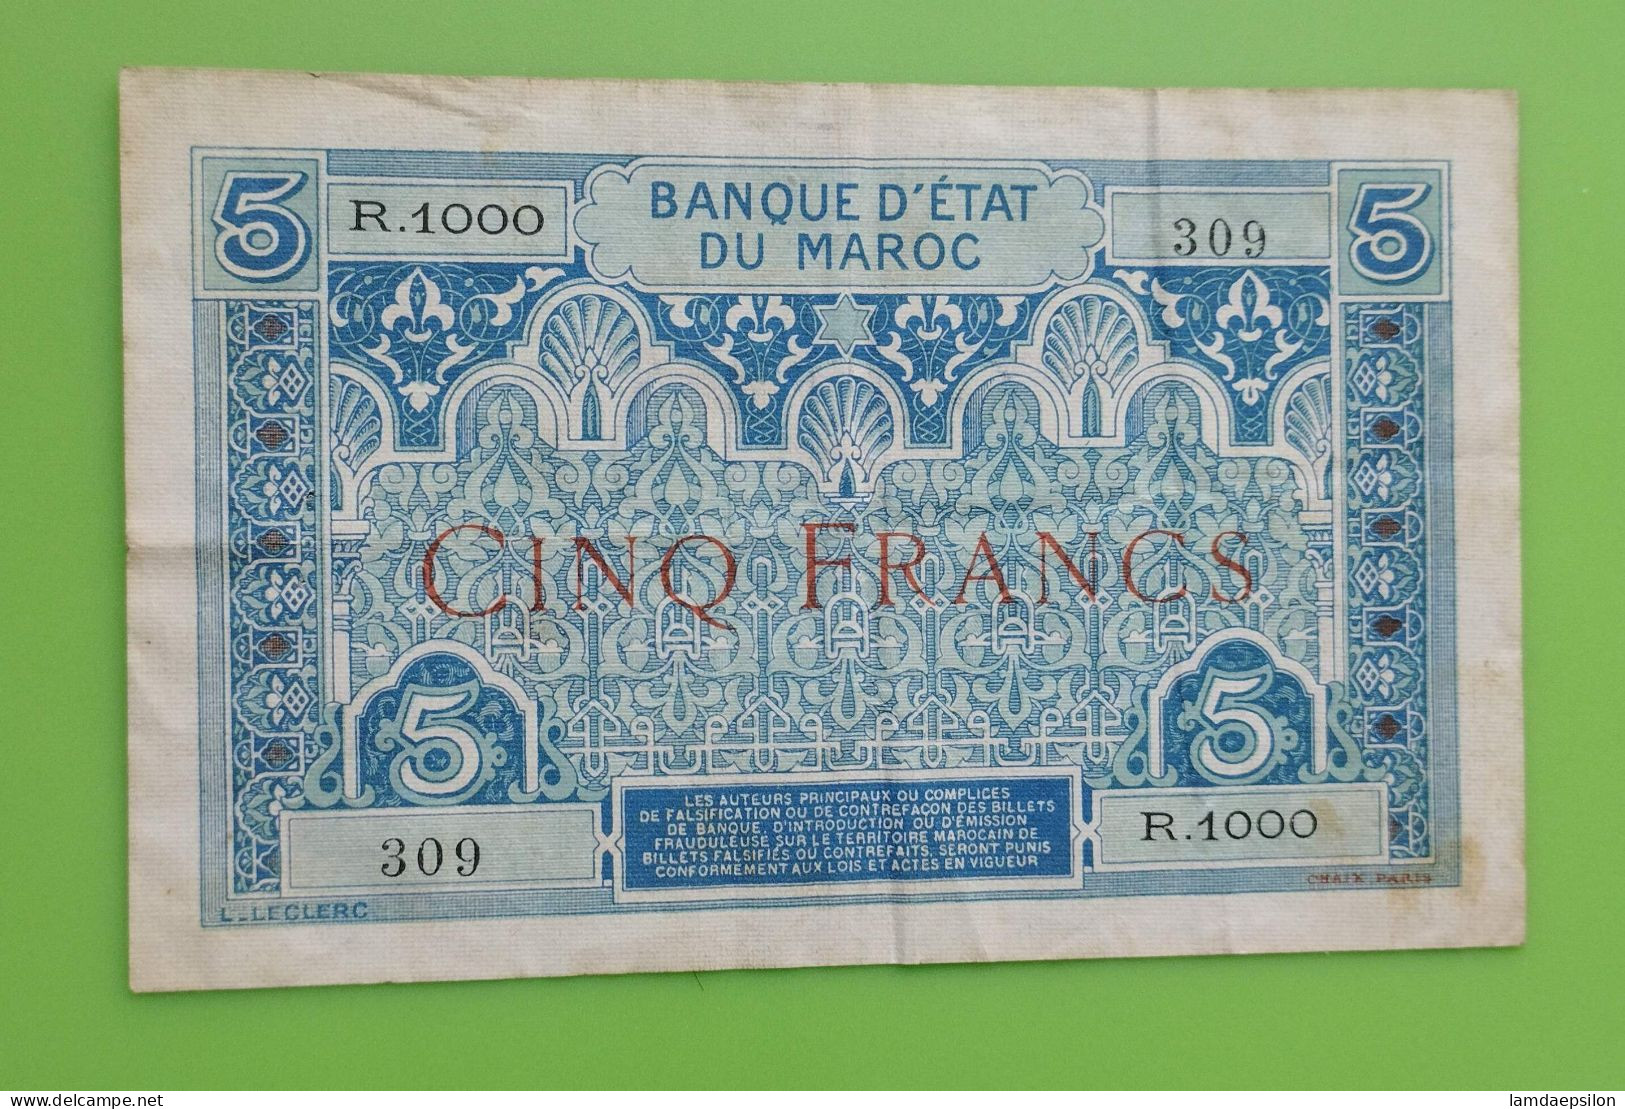 MAROC MOROCCO MARRUECOS MAROKKO BANQUE D'ETAT 5 FRANC 1924 RARE SIGNATURE - Maroc